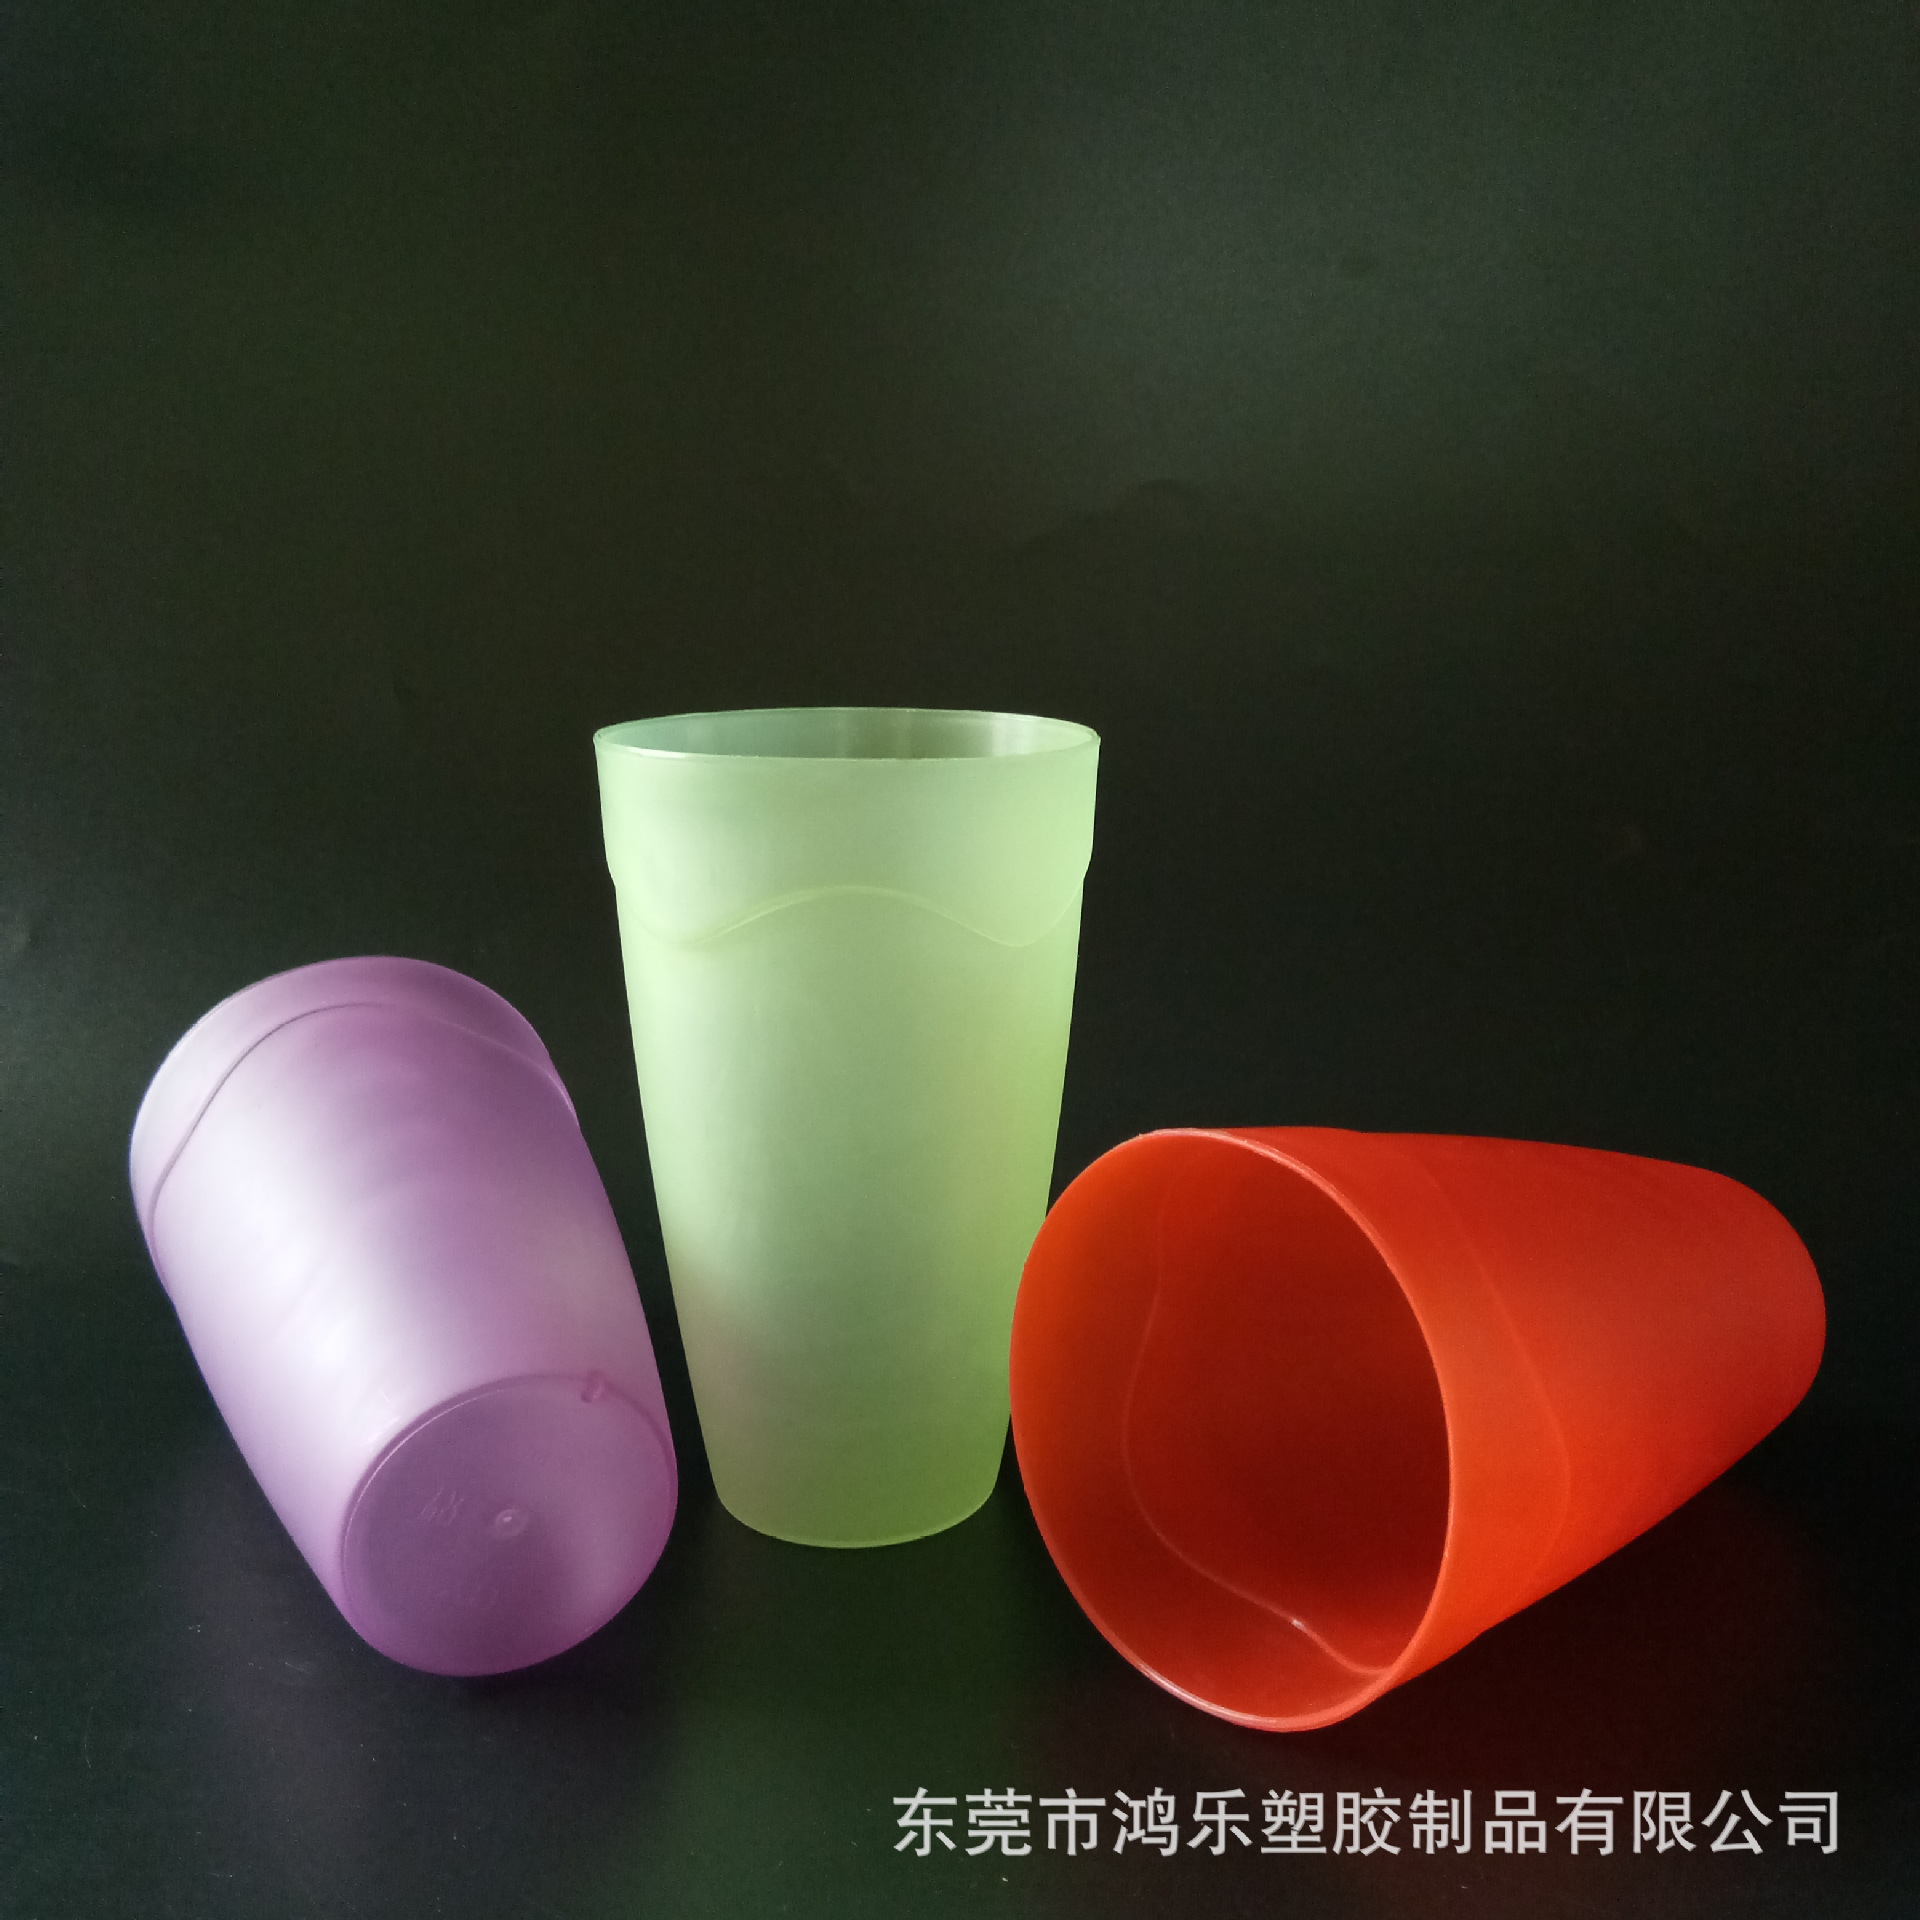 厂家定制PP彩色塑料杯450ml塑料果汁饮料杯细磨砂杯可印刷图案示例图2